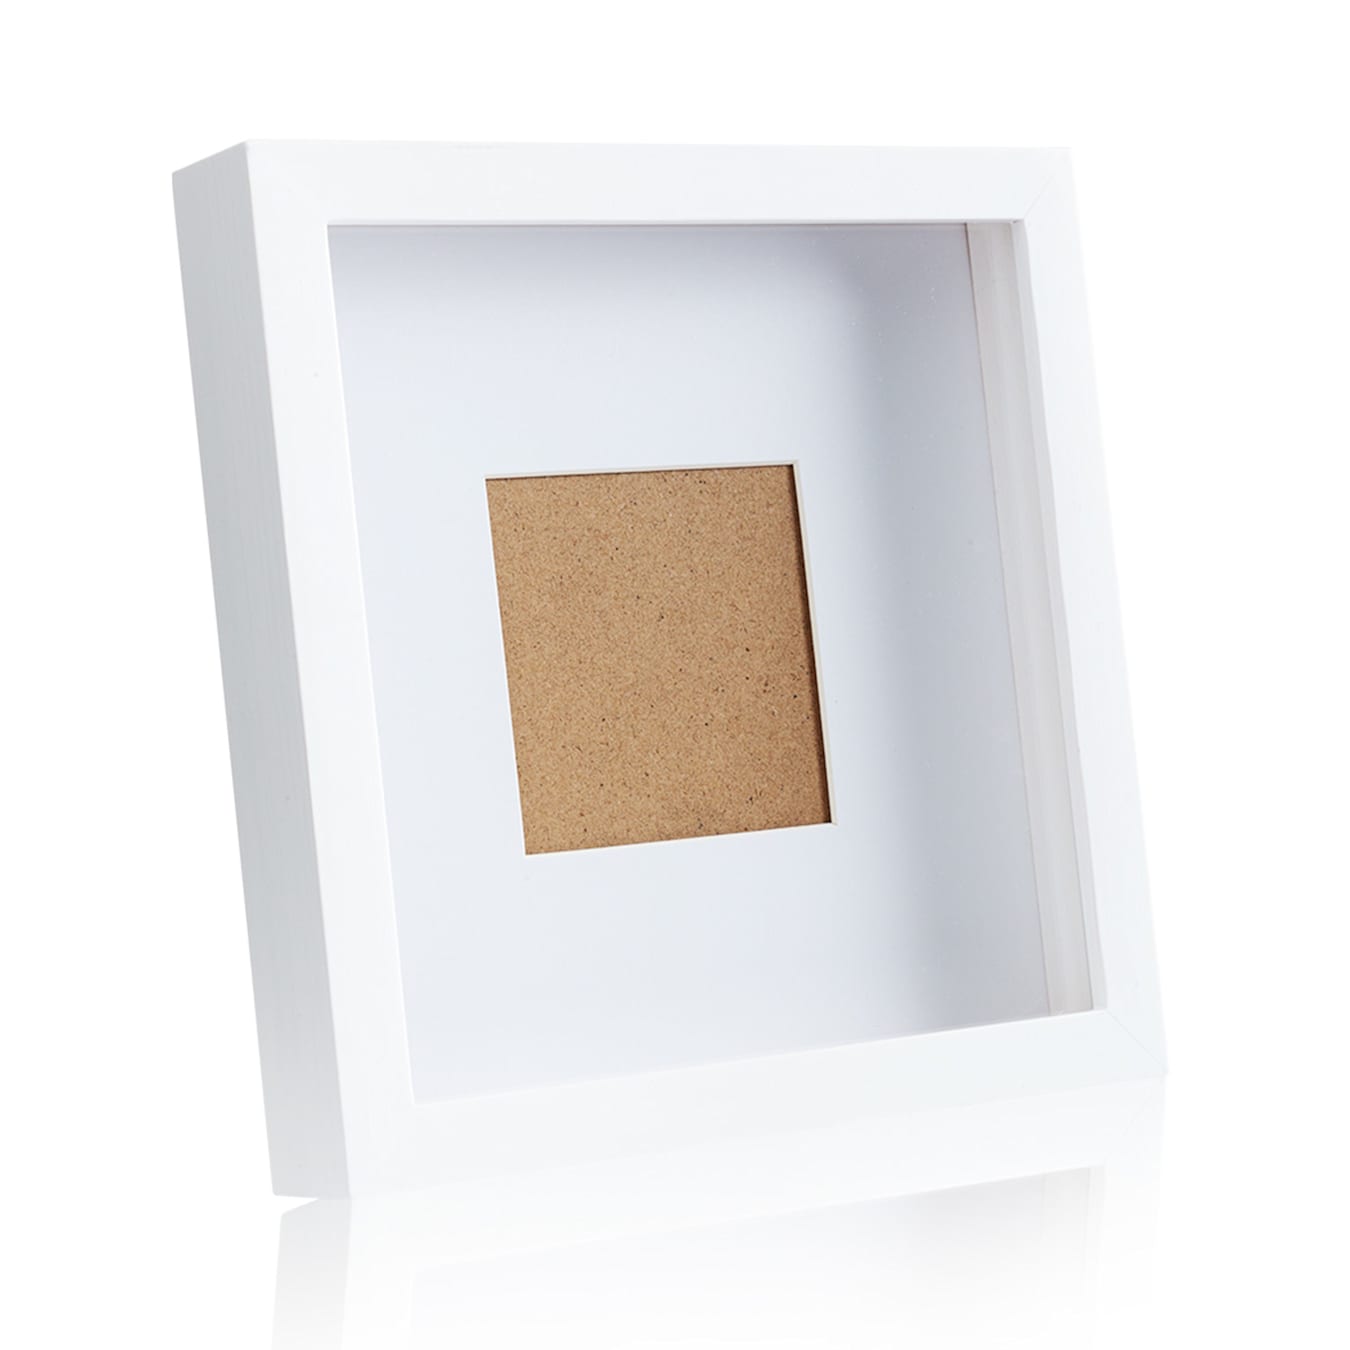 Juego de 3 marcos de fotos en caja A2 (42 x 59,4 cm), con soportes